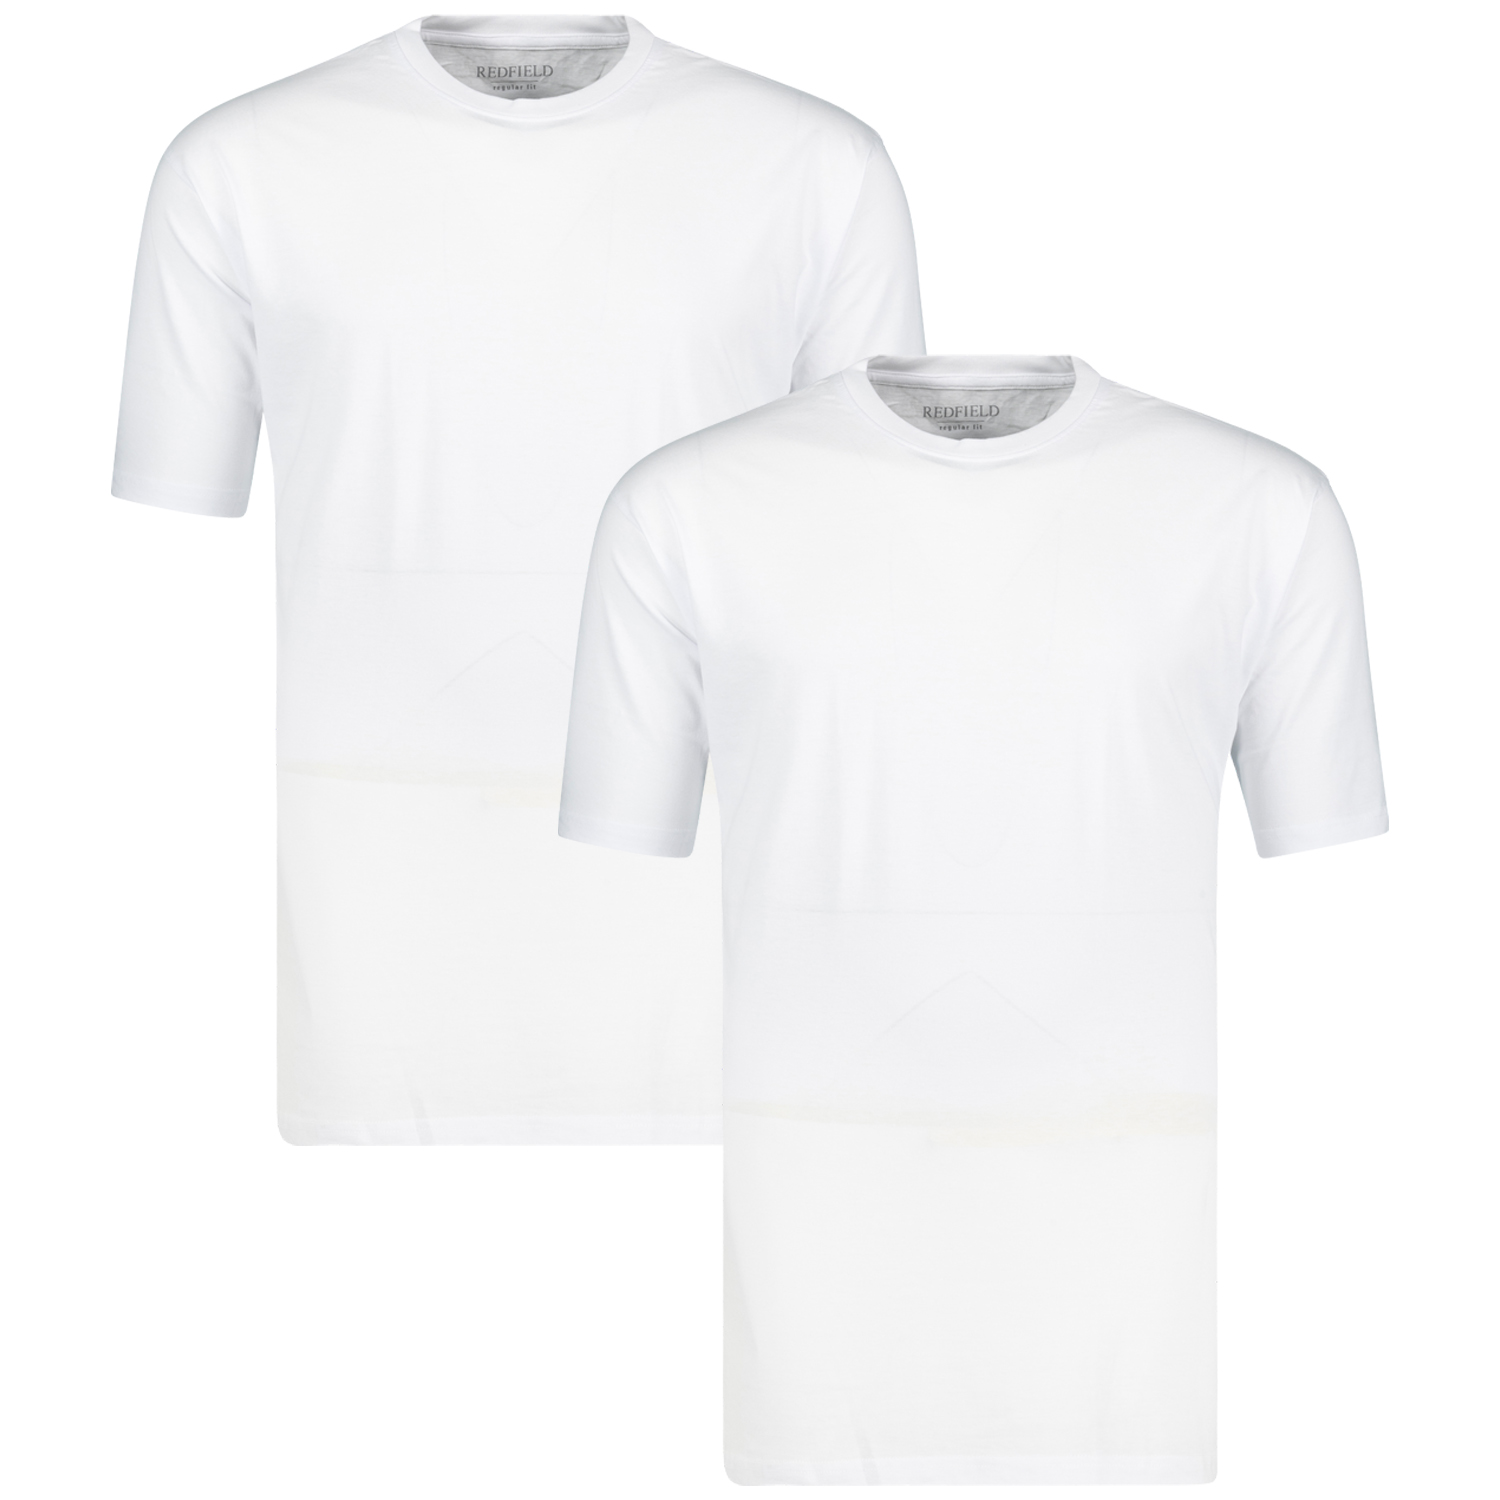 2er Pack Rundhals-T-Shirt weiß von Redfield in großen Größen bis 10XL für Herren